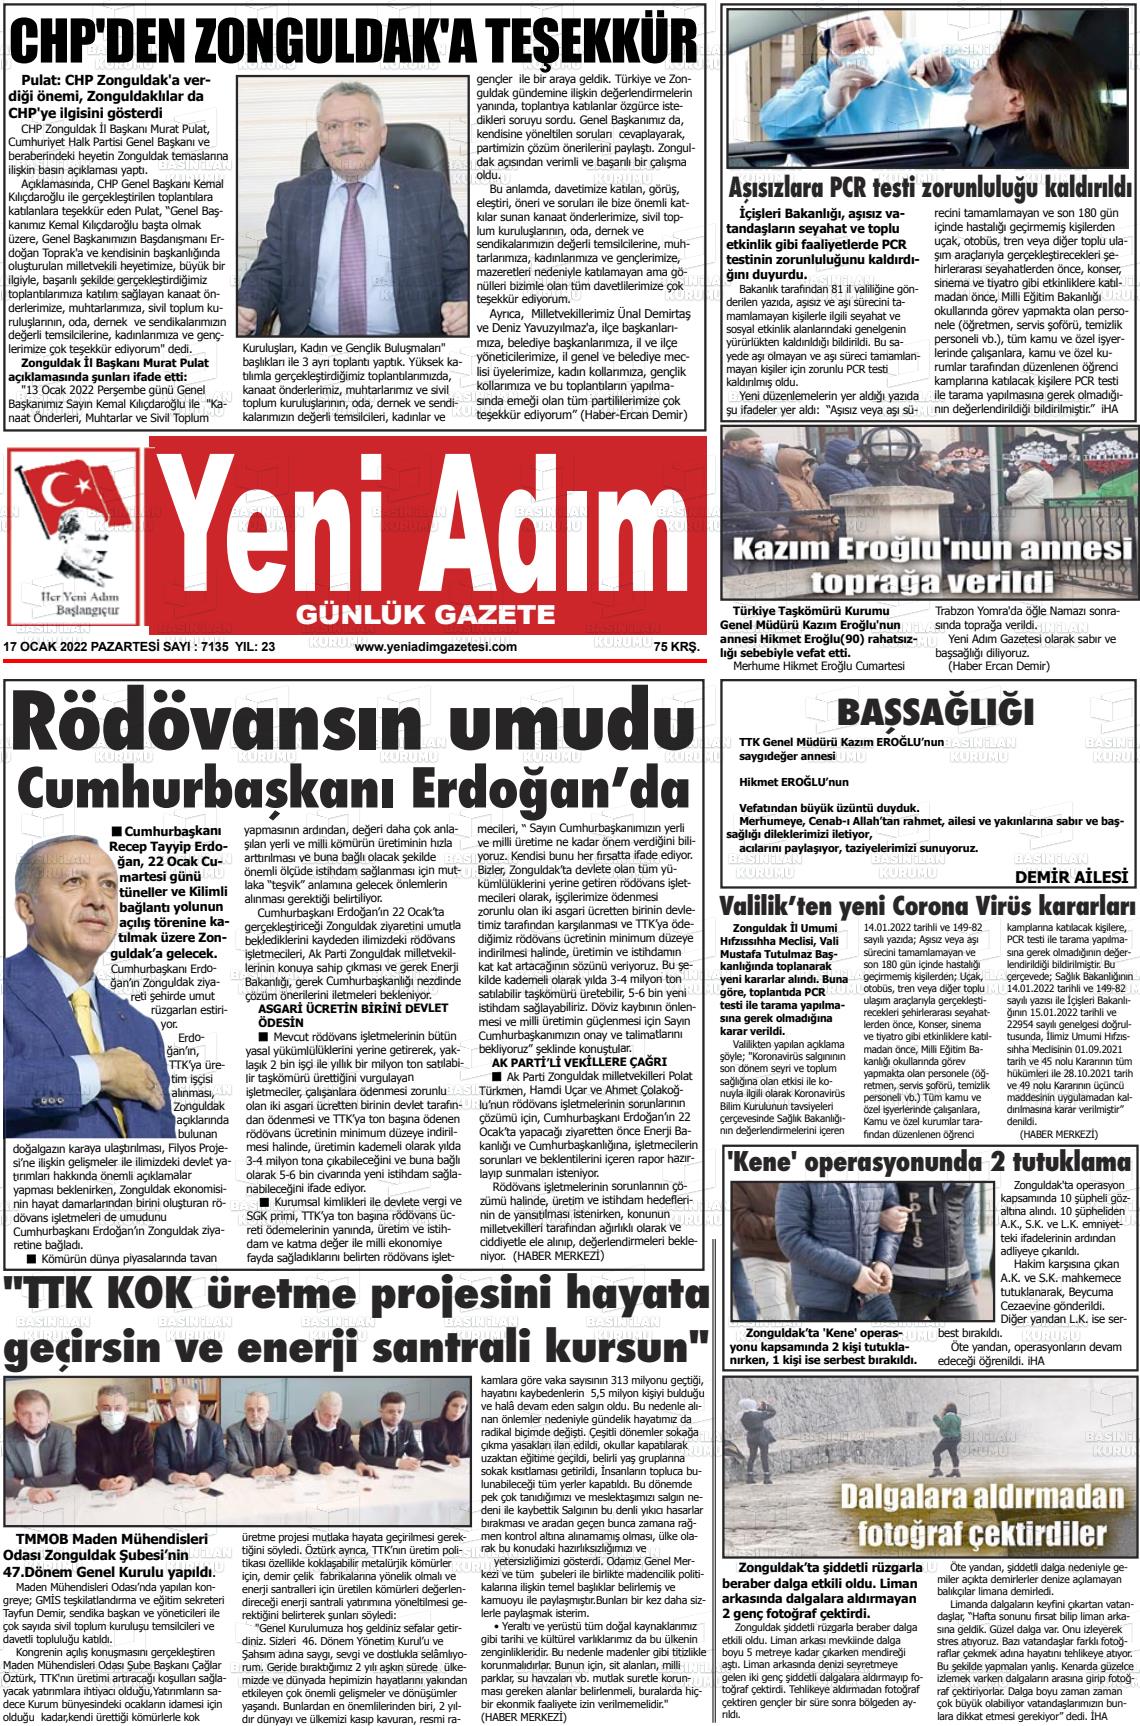 17 Ocak 2022 Yeni Adım Gazete Manşeti